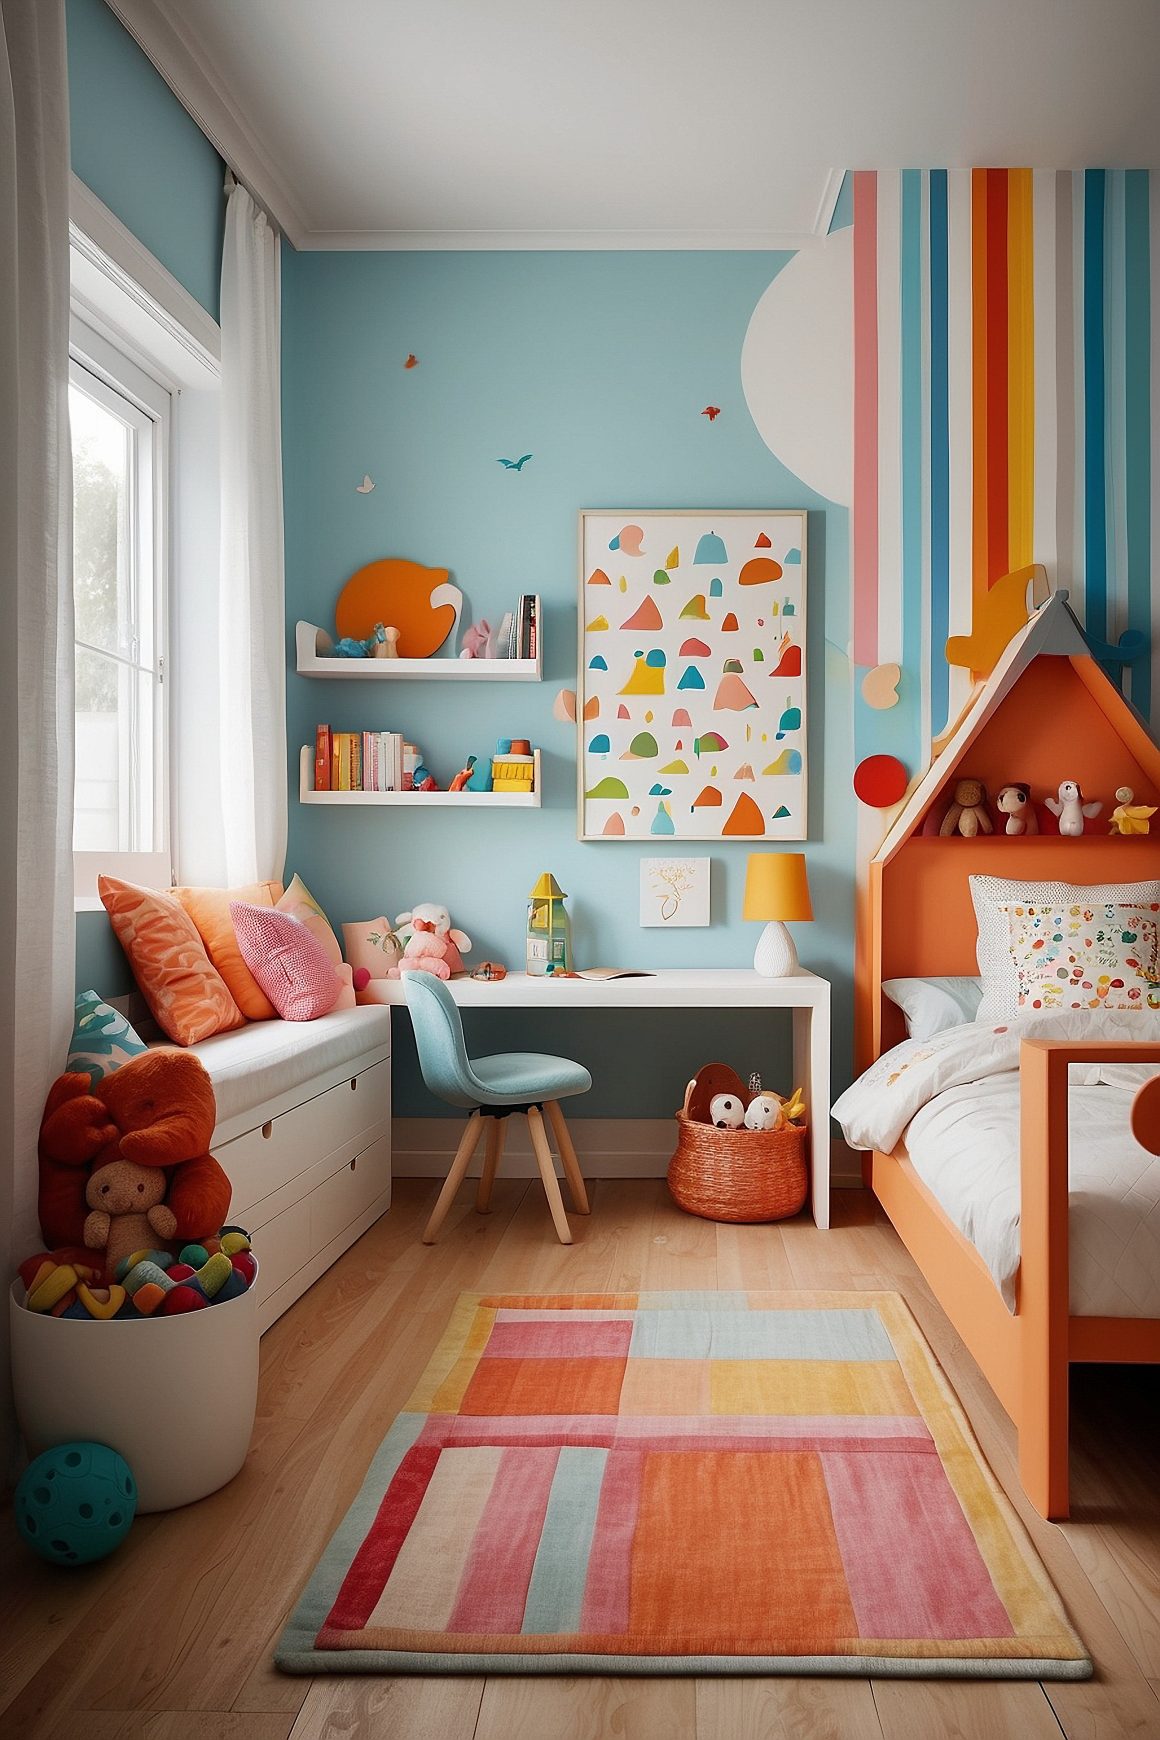 papier peint chambre enfant avec des touches de couleurs vives et douces, telles que le rouge, le bleu et le orange